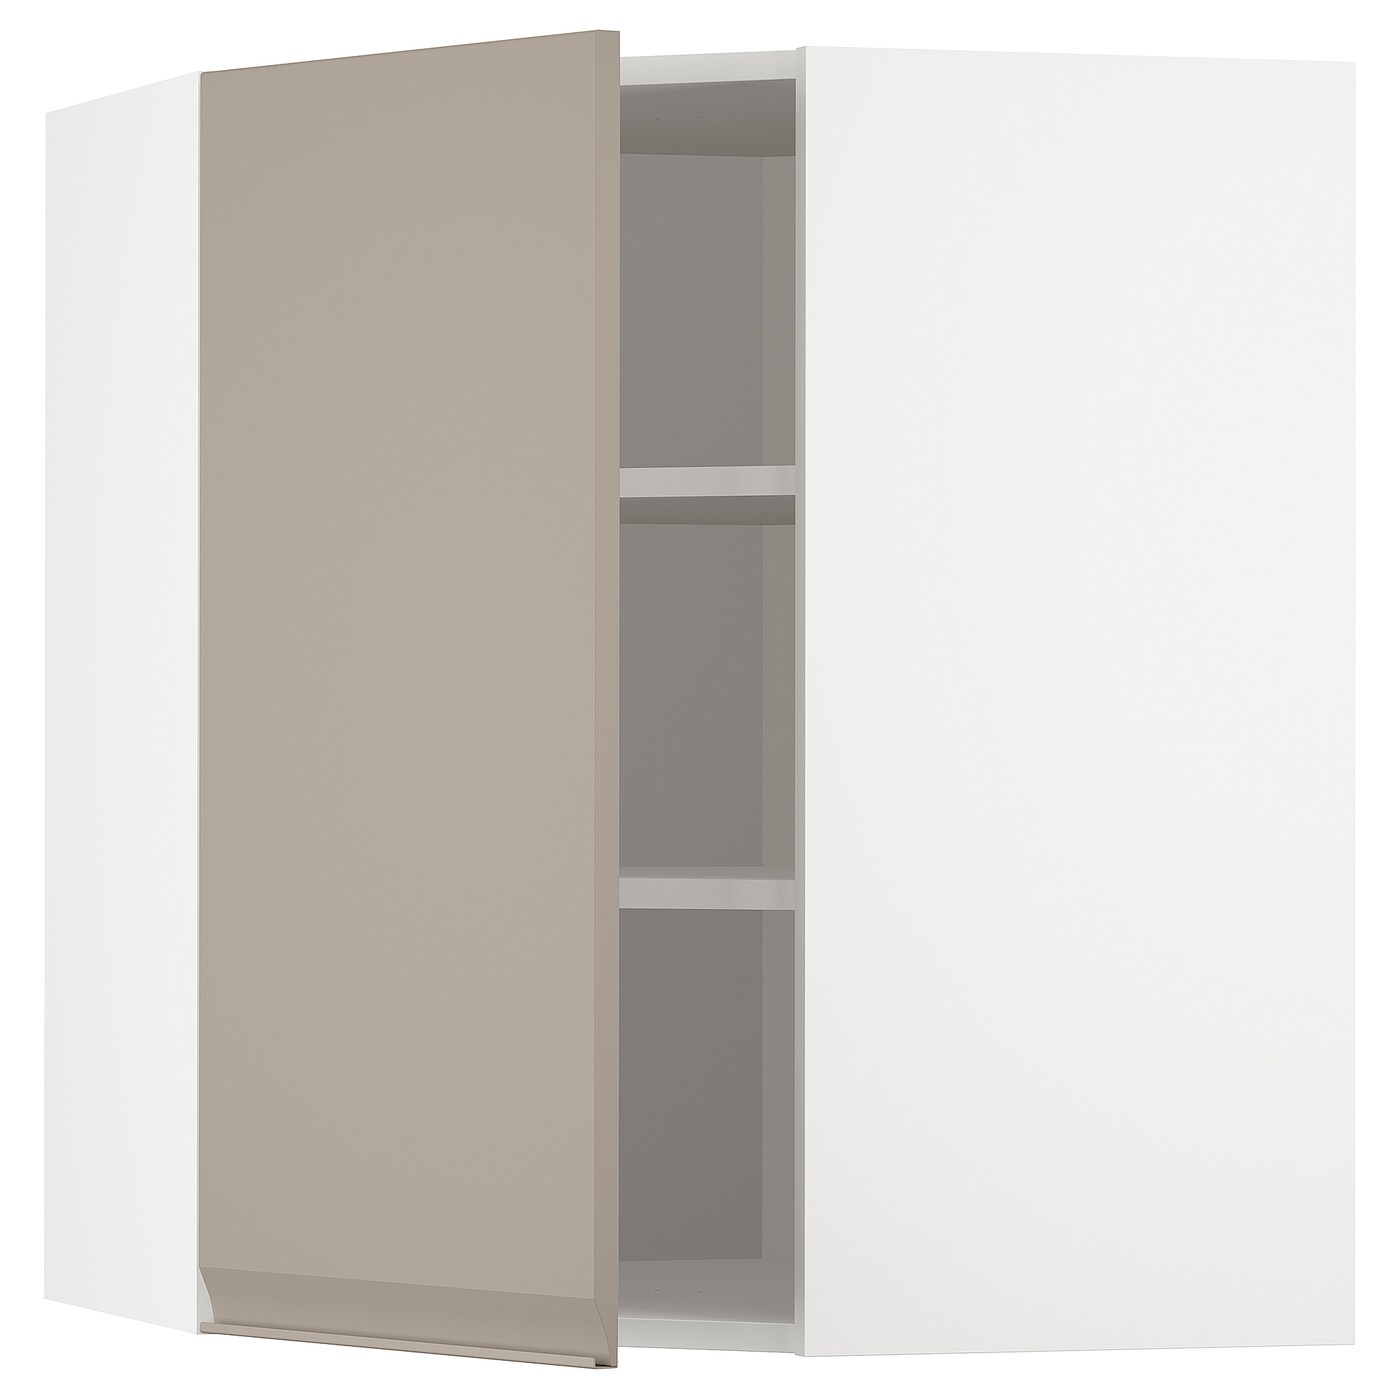 Угловой навесной шкаф с полками - METOD  IKEA/  МЕТОД ИКЕА, 80х68 см, белый/светло-коричневый